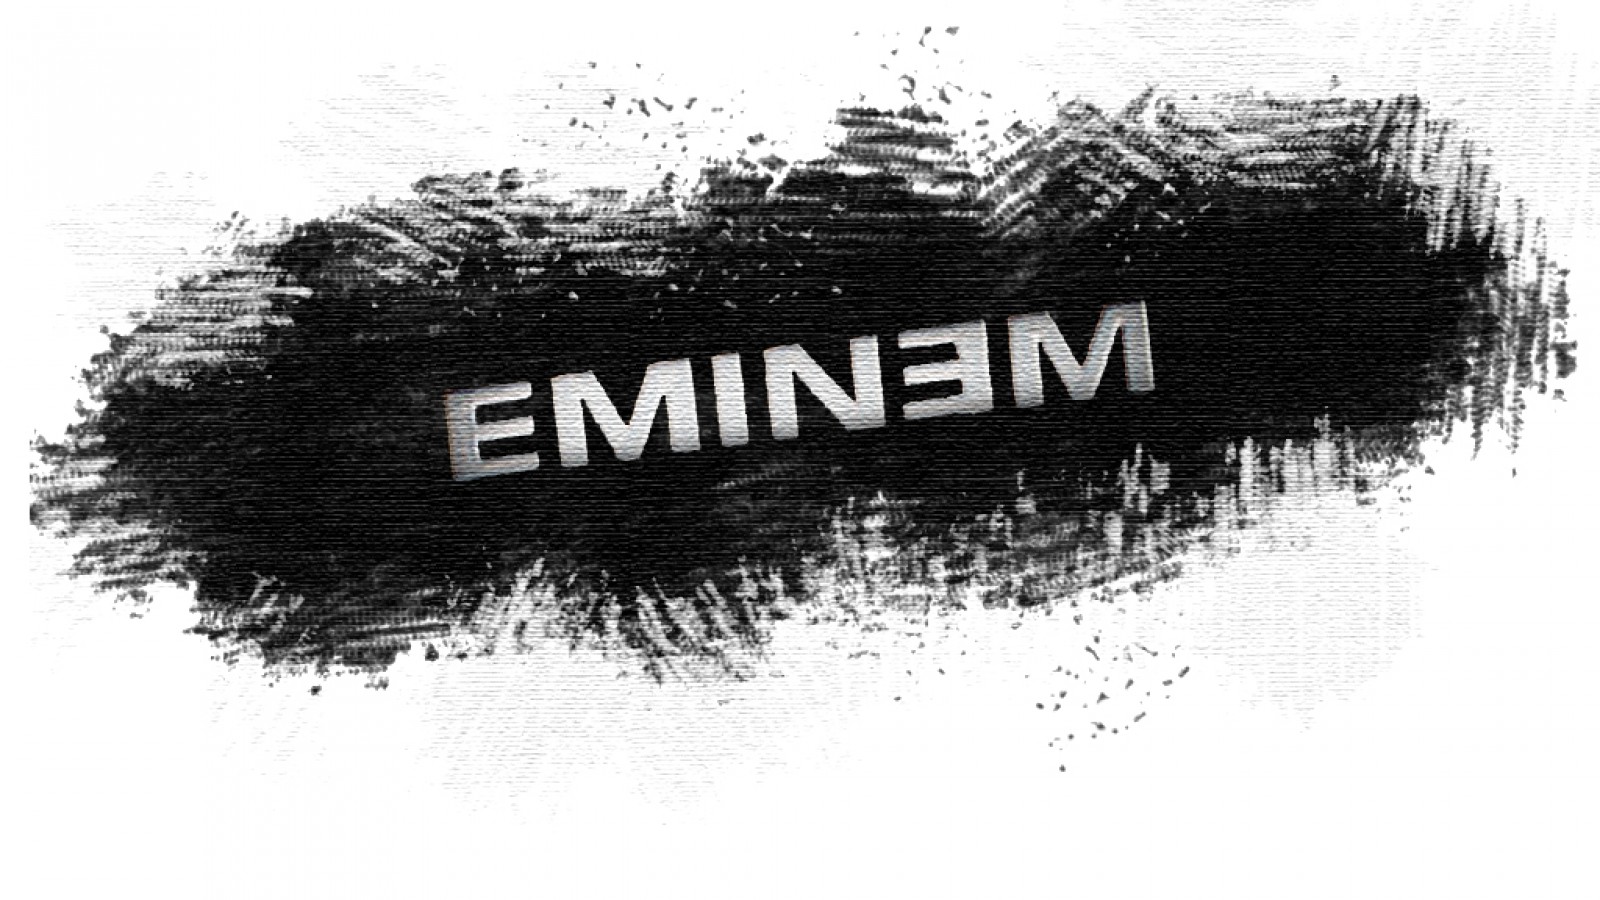 Eminem Wallpaper 4